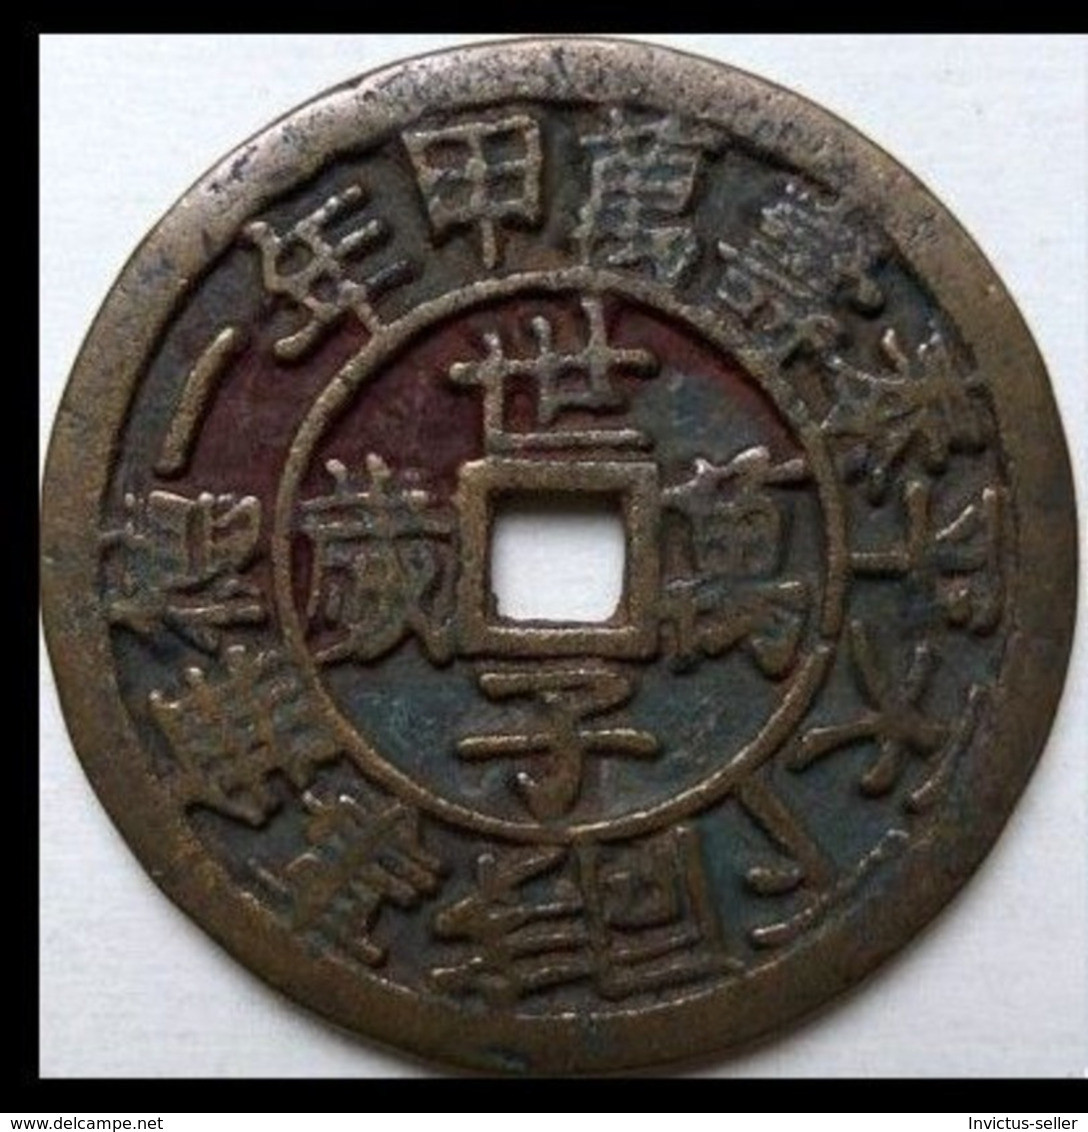 KOREA ANTICA MONETA COREANA PERIODO IMPERIALE IMPERIALE COREANE COINS  PIECES MONET COREA IMPERIAL COD #60 - Korea (Noord)